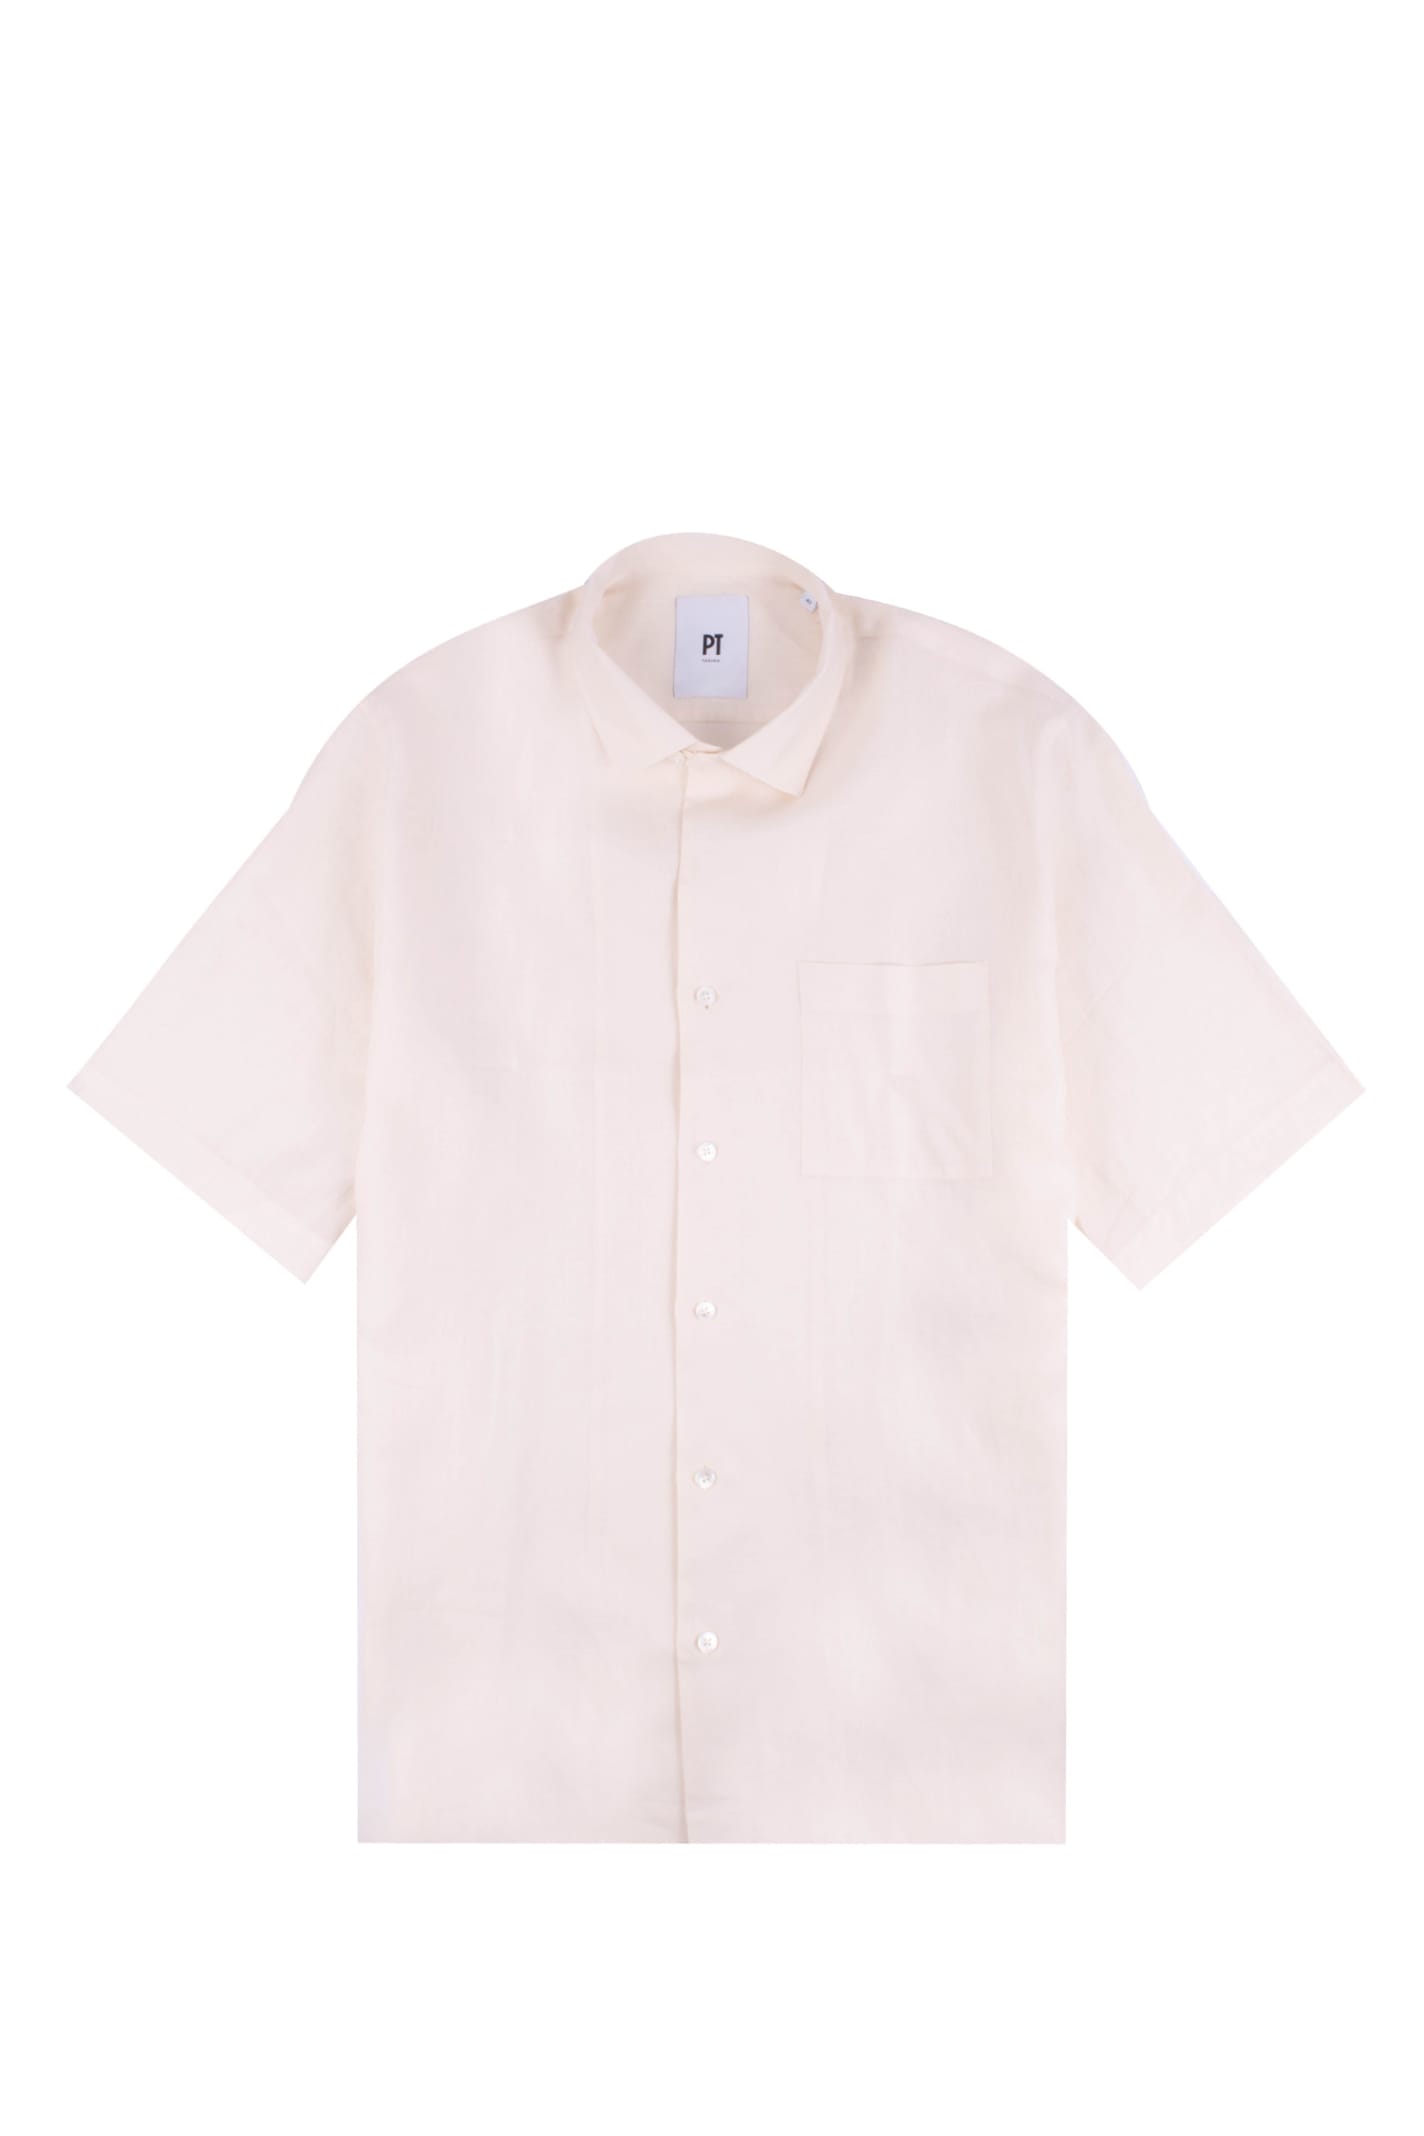 PT01 Linen Shirt